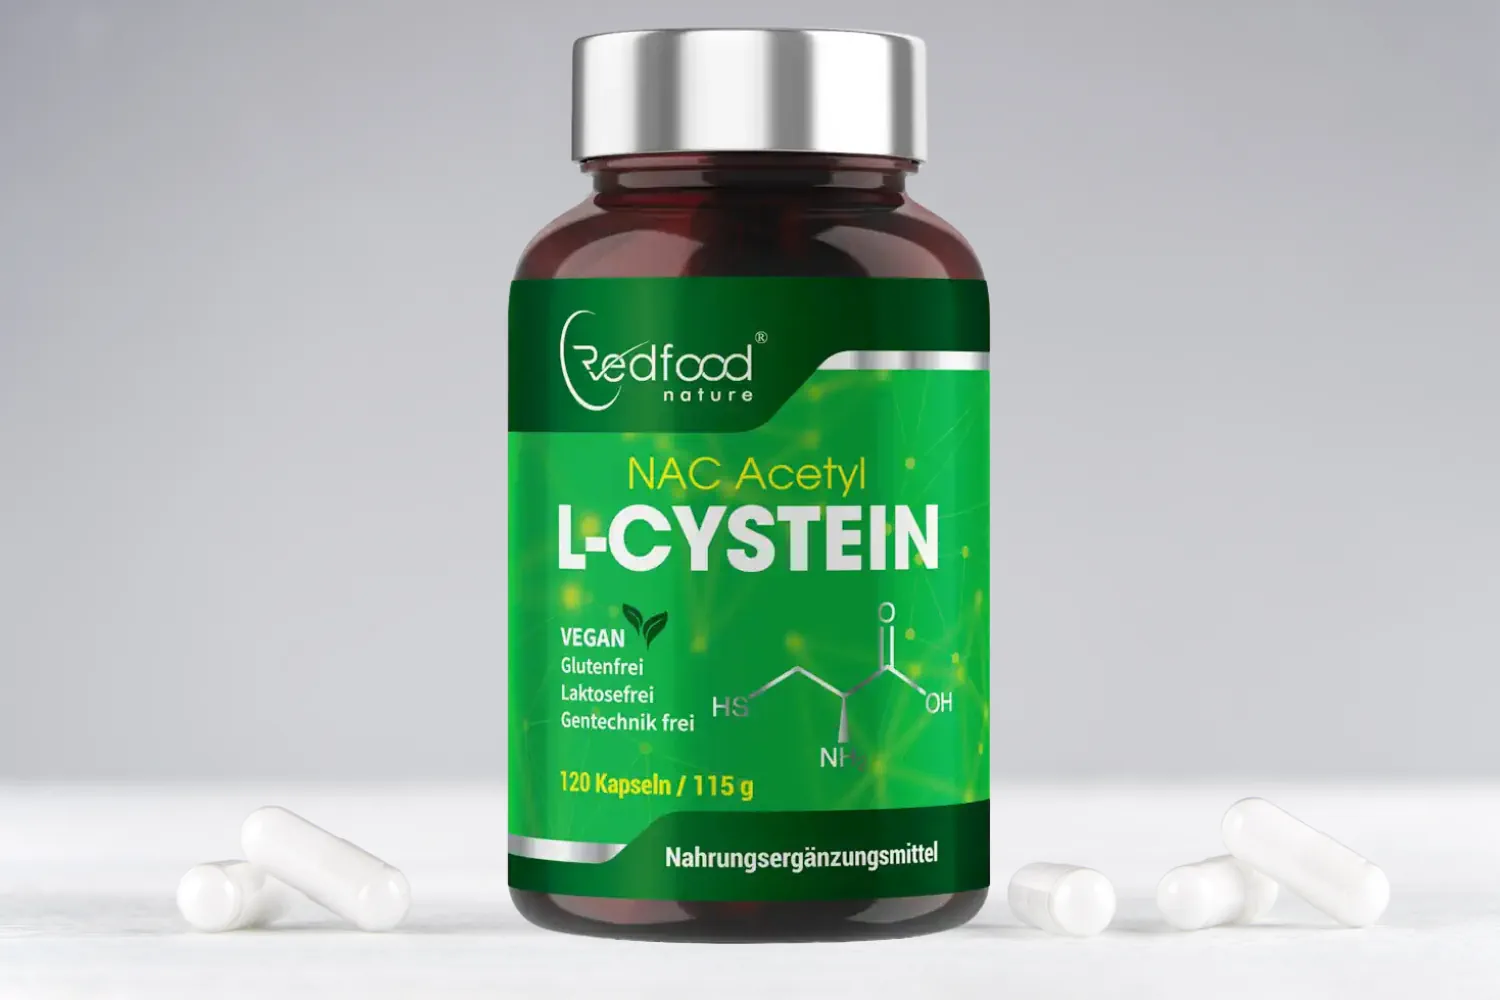 NAC N Acetyl L-Cystein